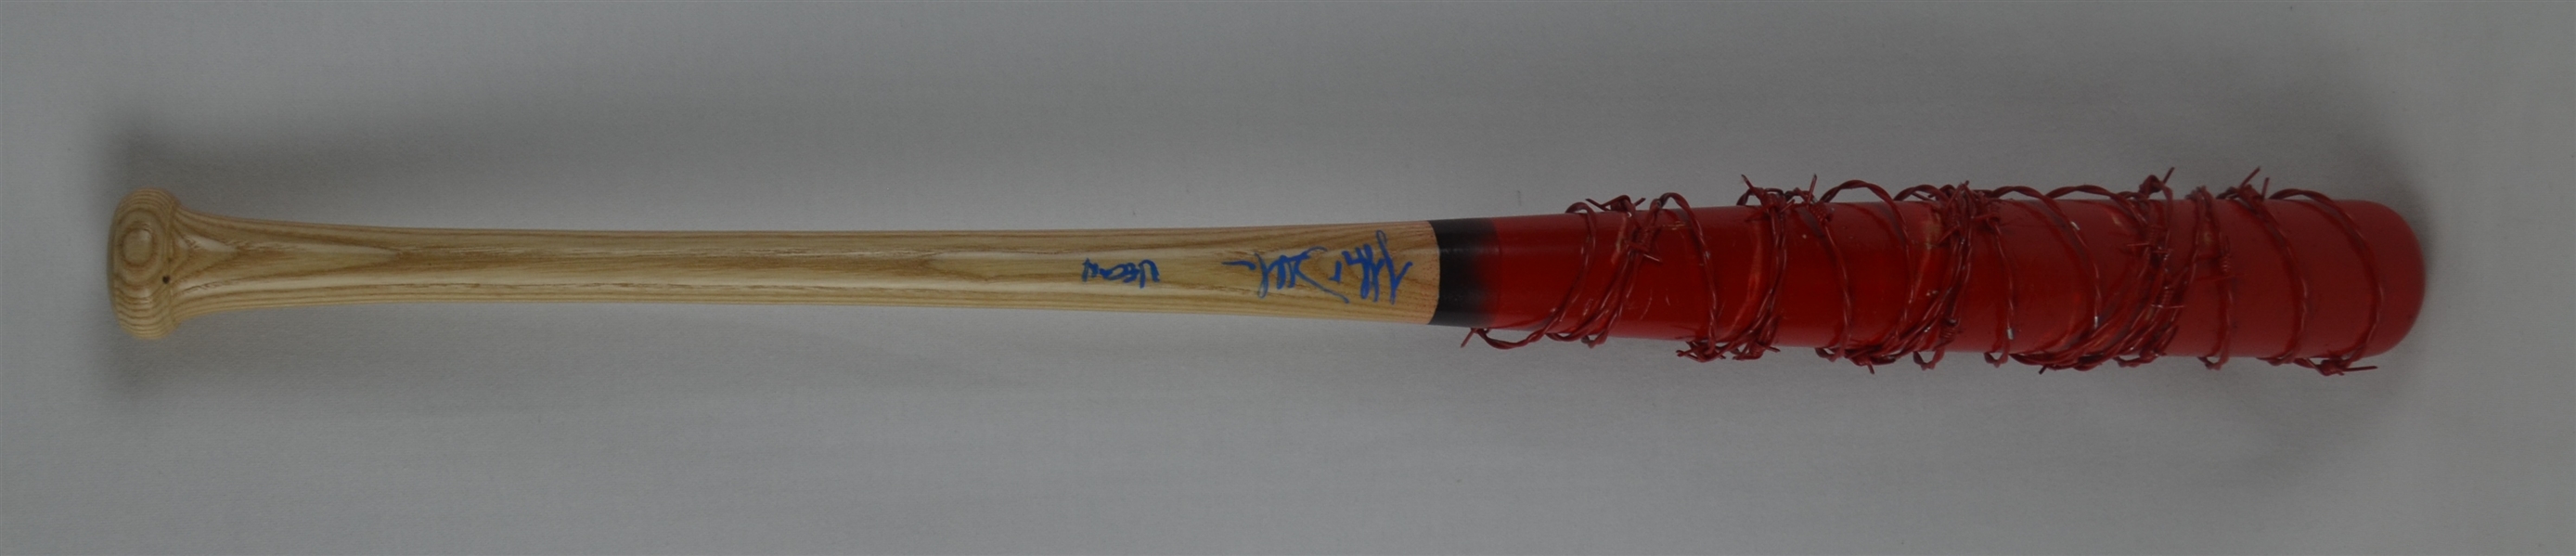 The Walking Dead Jeffrey Dean Morgan “Negan’s Lucille” Autographed Bat 